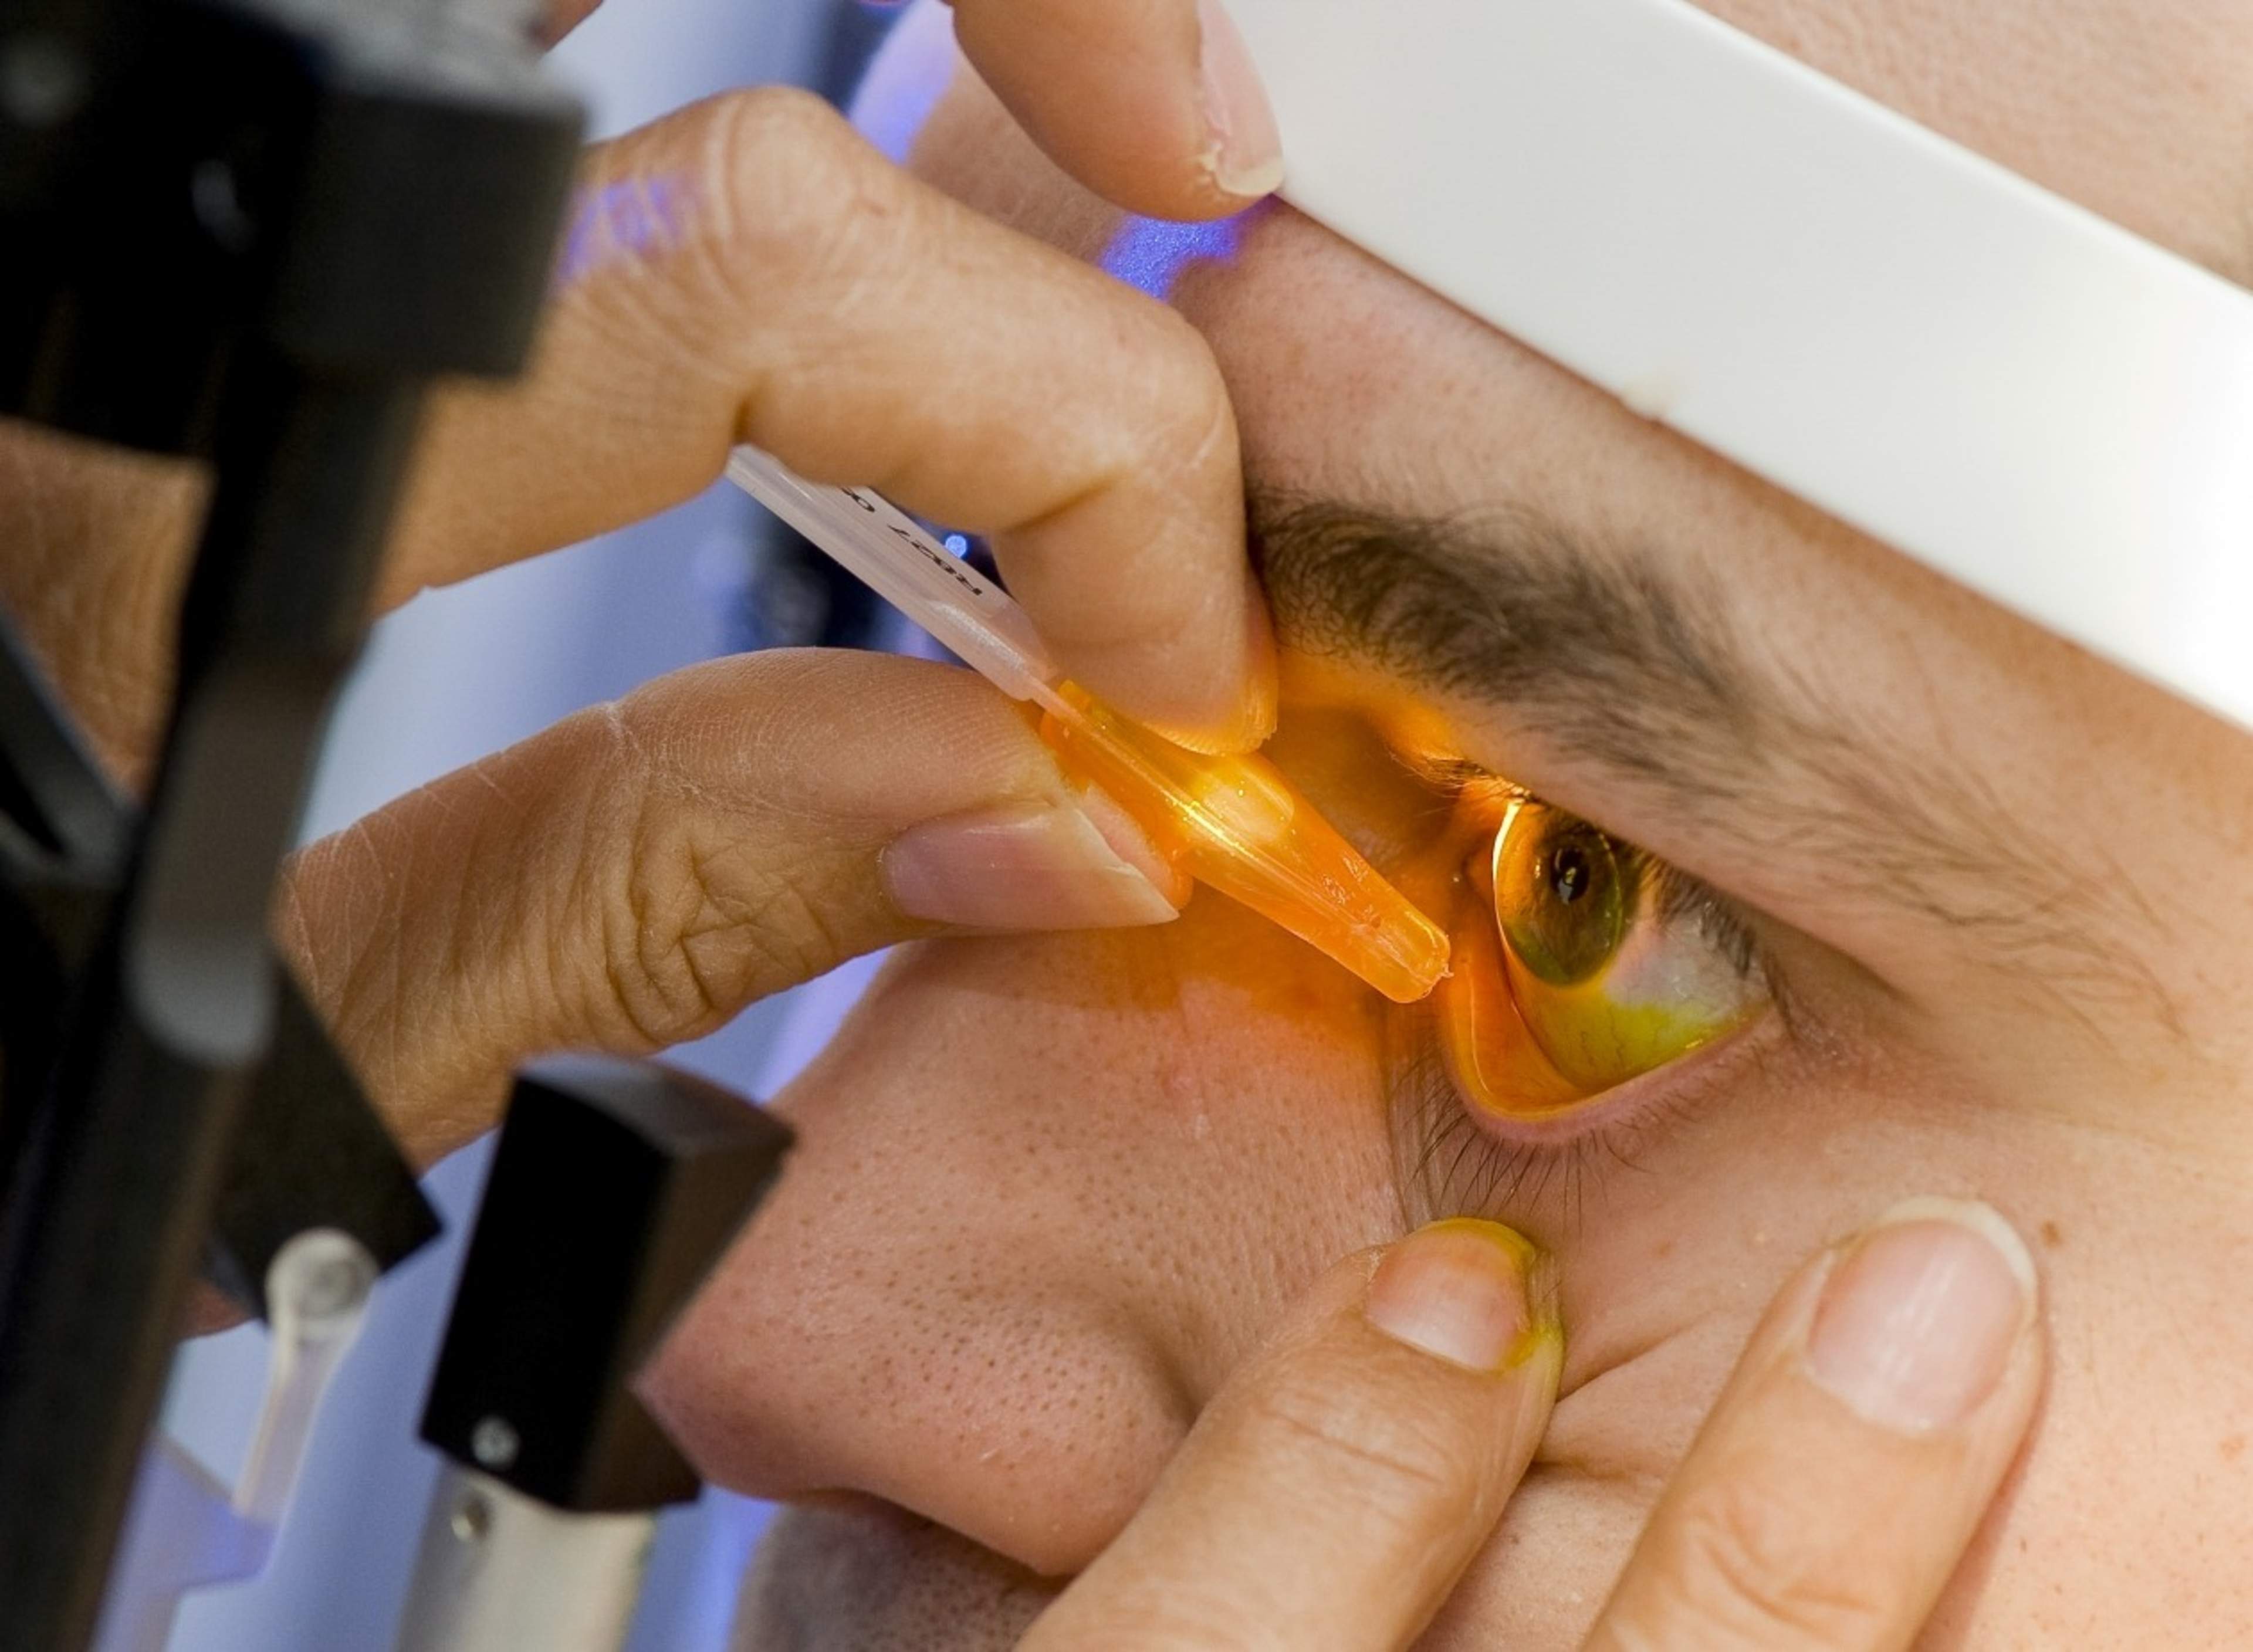 Silmän pinta voidaan värjätä keltaisella fluoreseiini-värillä ja tarkastella kyynelnesteen hajoamisnopeutta ja mahdollisia pintavaurioita sinivalon avulla